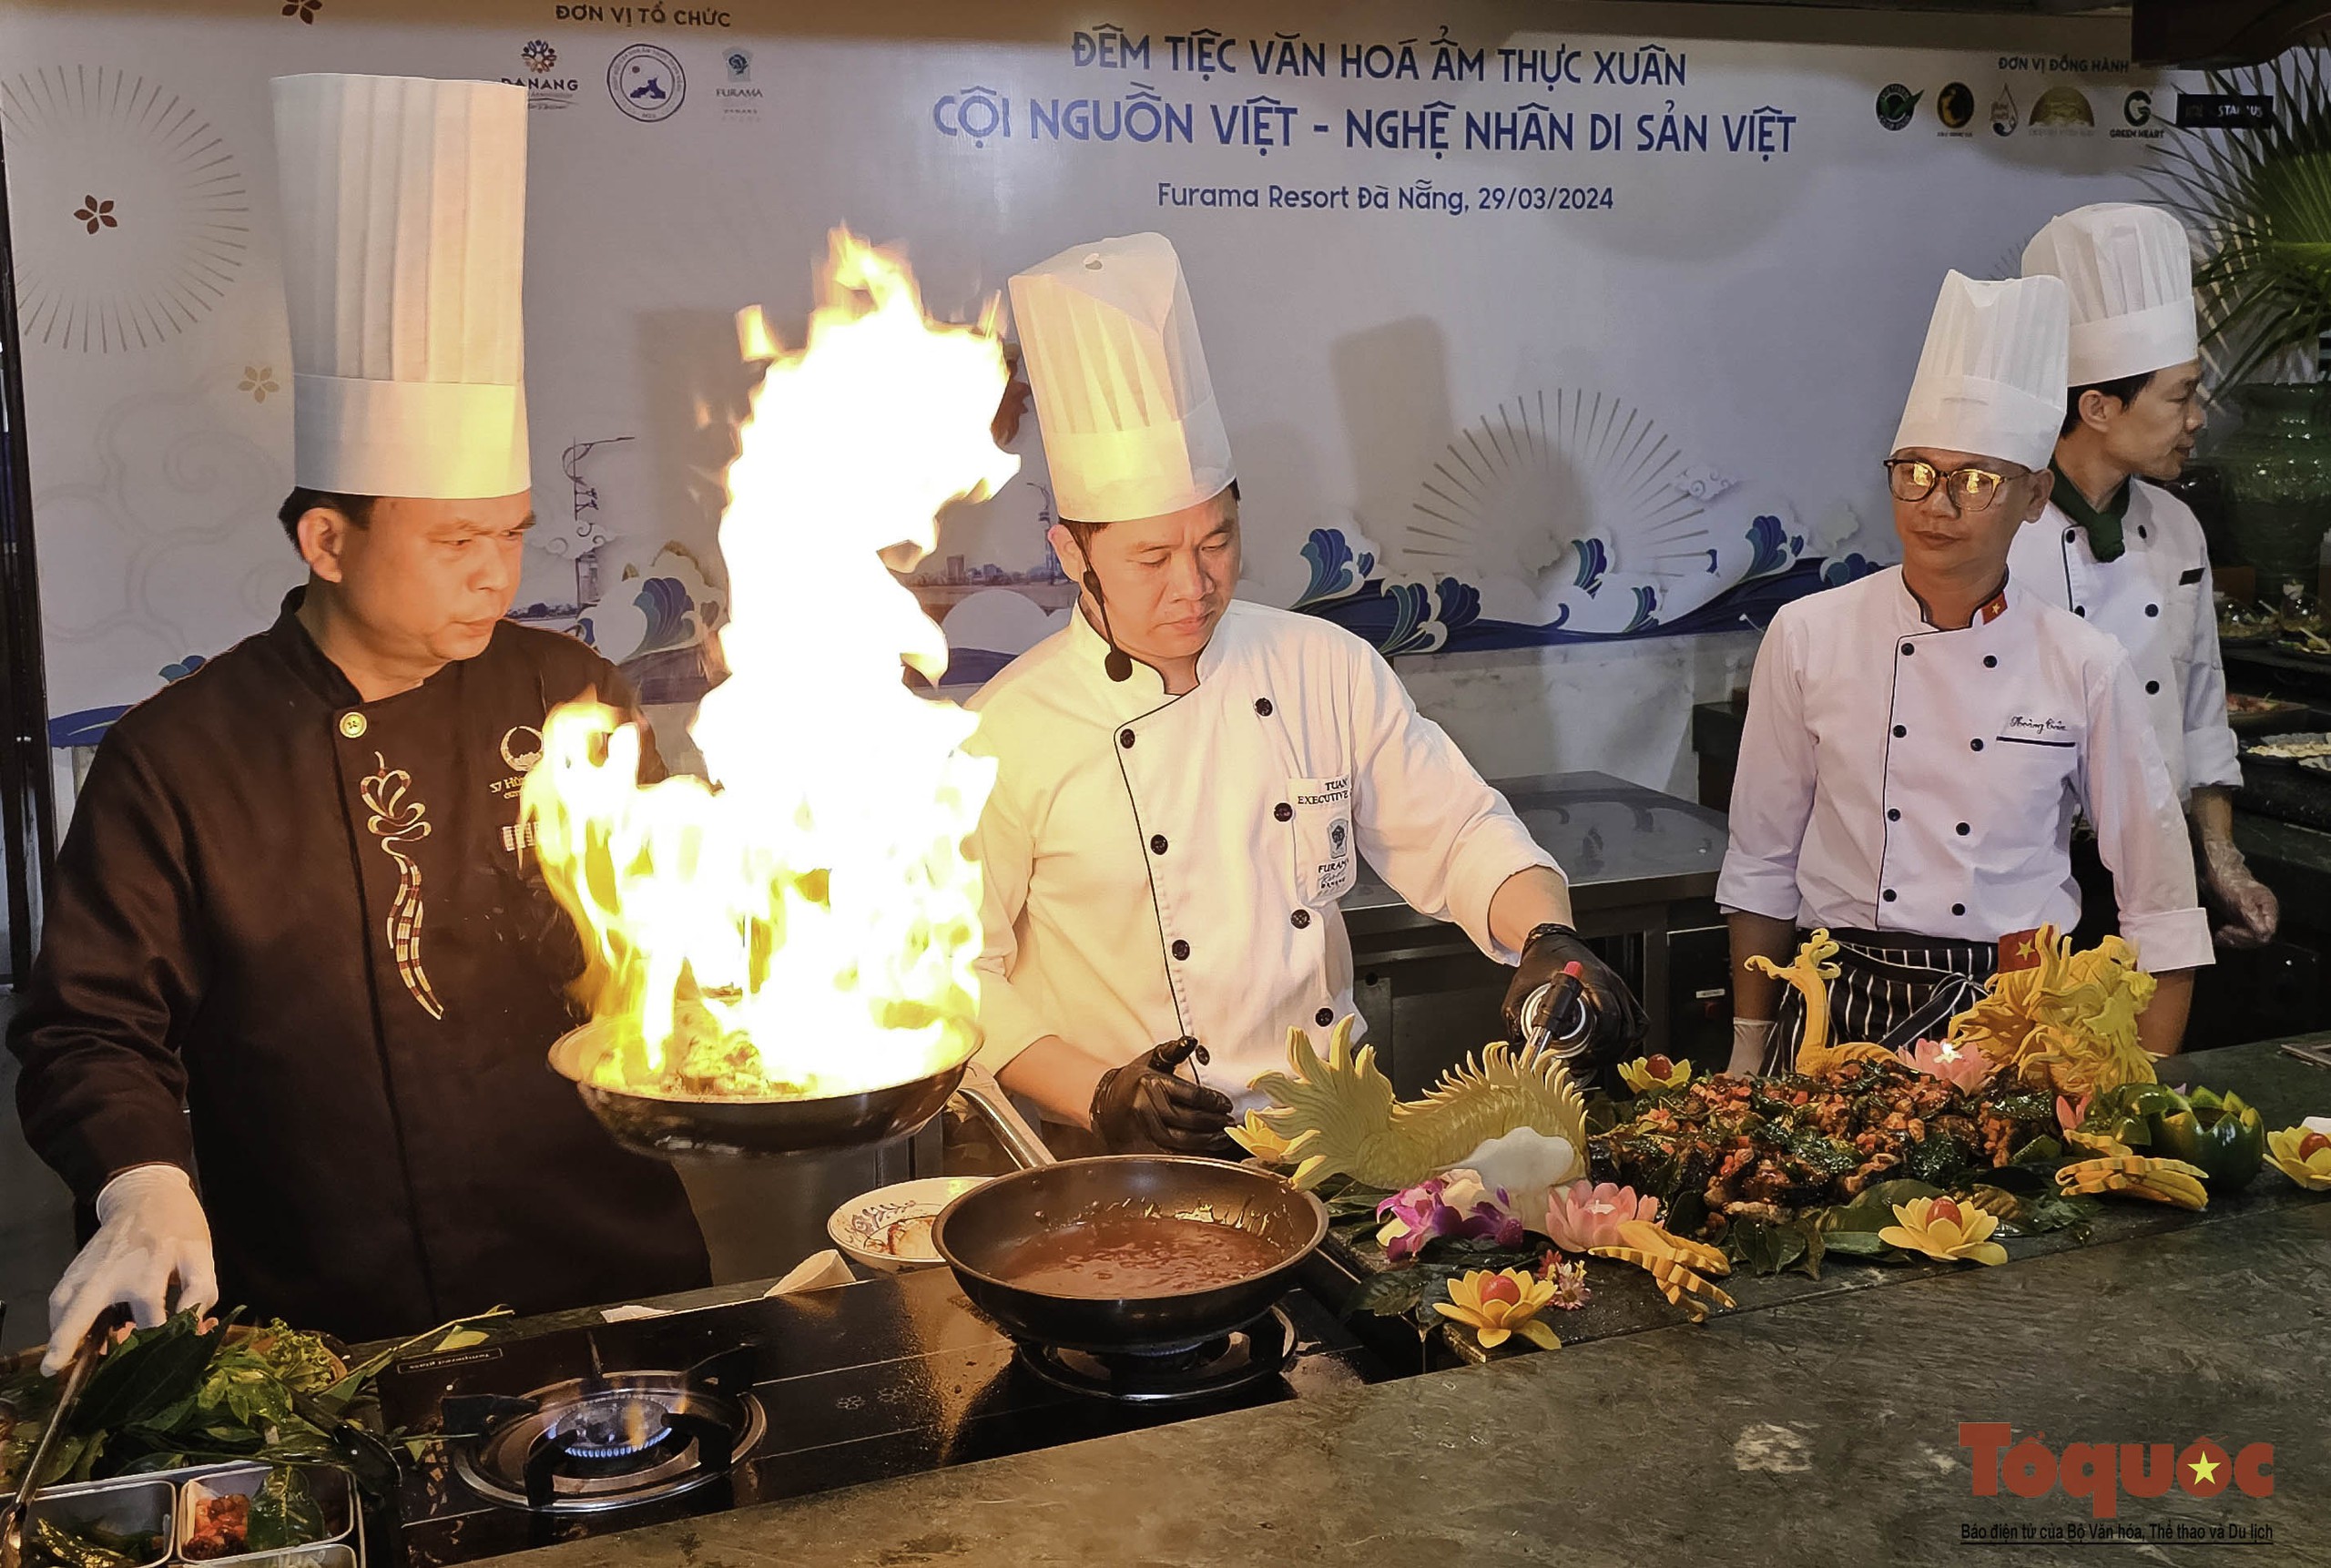 Xem các nghệ nhân ẩm thực hàng đầu Việt Nam trình diễn các món ăn mang đậm văn hóa ẩm thực Việt - Ảnh 1.